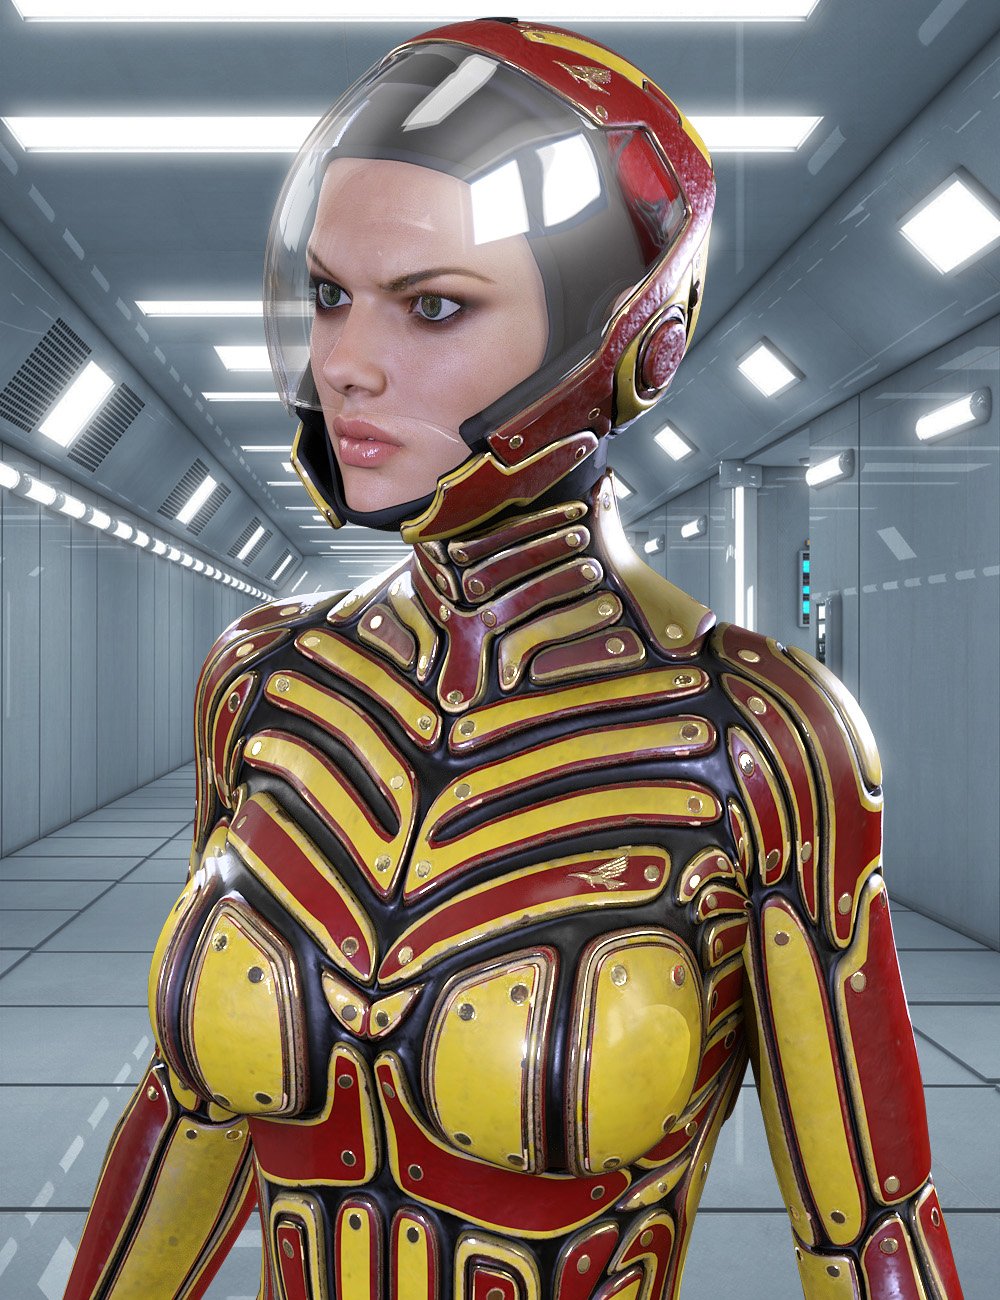 Titan Suit Texture Expansion Set by: midnight_stories, 3D Models by Daz 3D